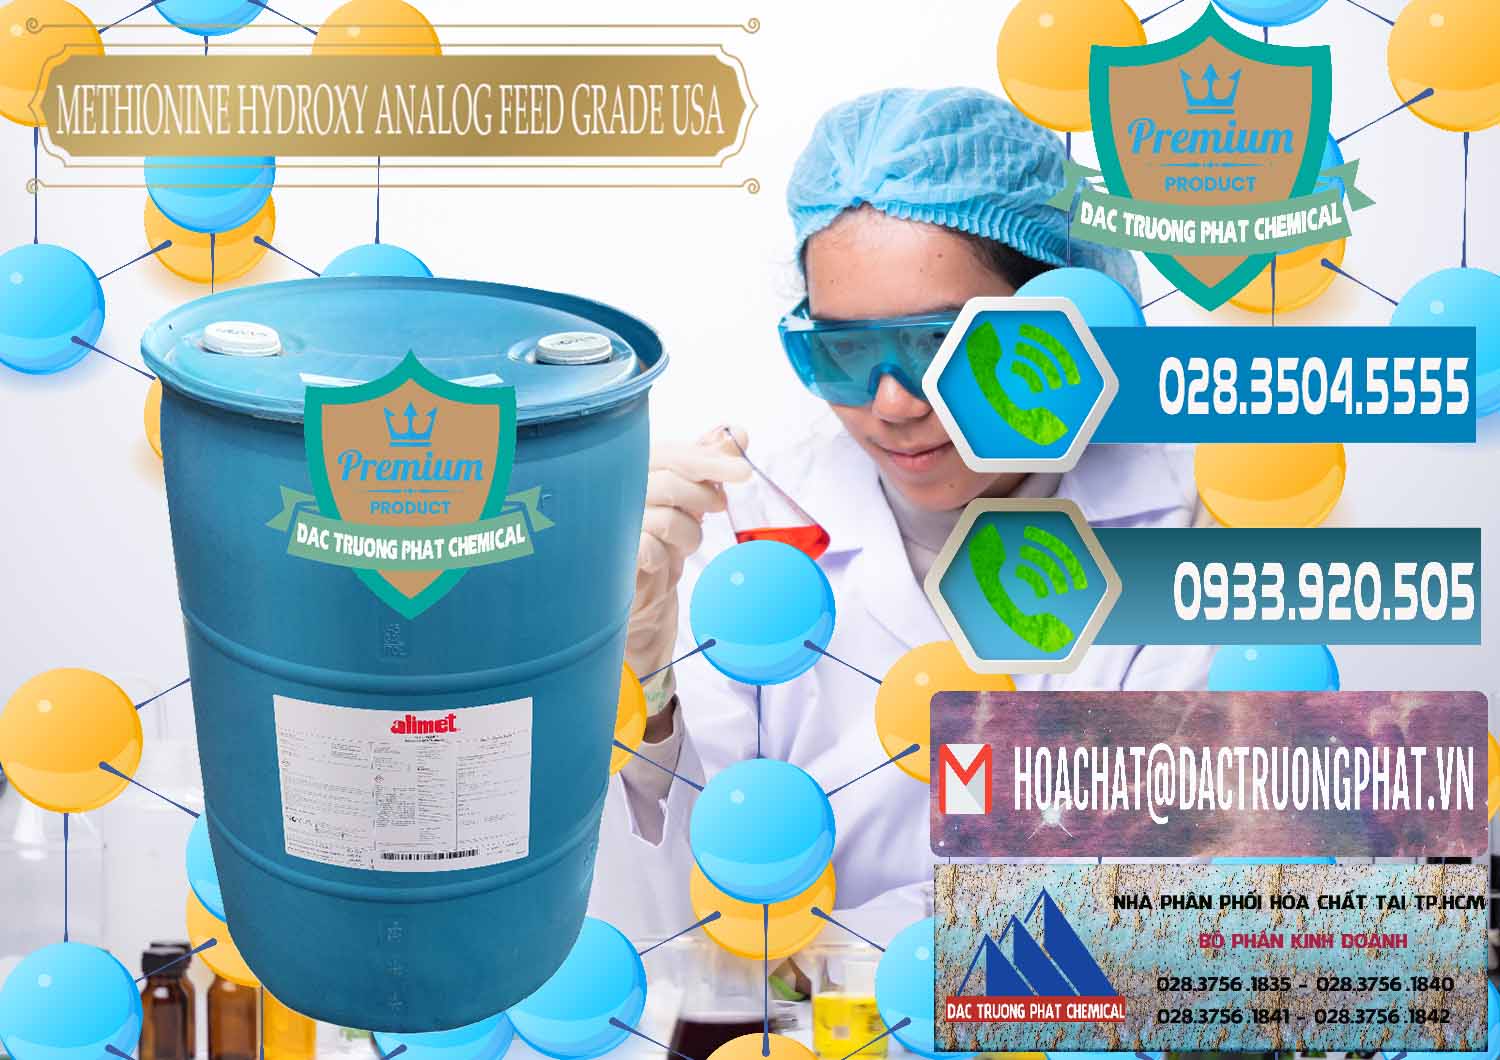 Chuyên cung cấp & bán Methionine Nước - Dạng Lỏng Novus Alimet Mỹ USA - 0316 - Chuyên nhập khẩu & cung cấp hóa chất tại TP.HCM - congtyhoachat.net